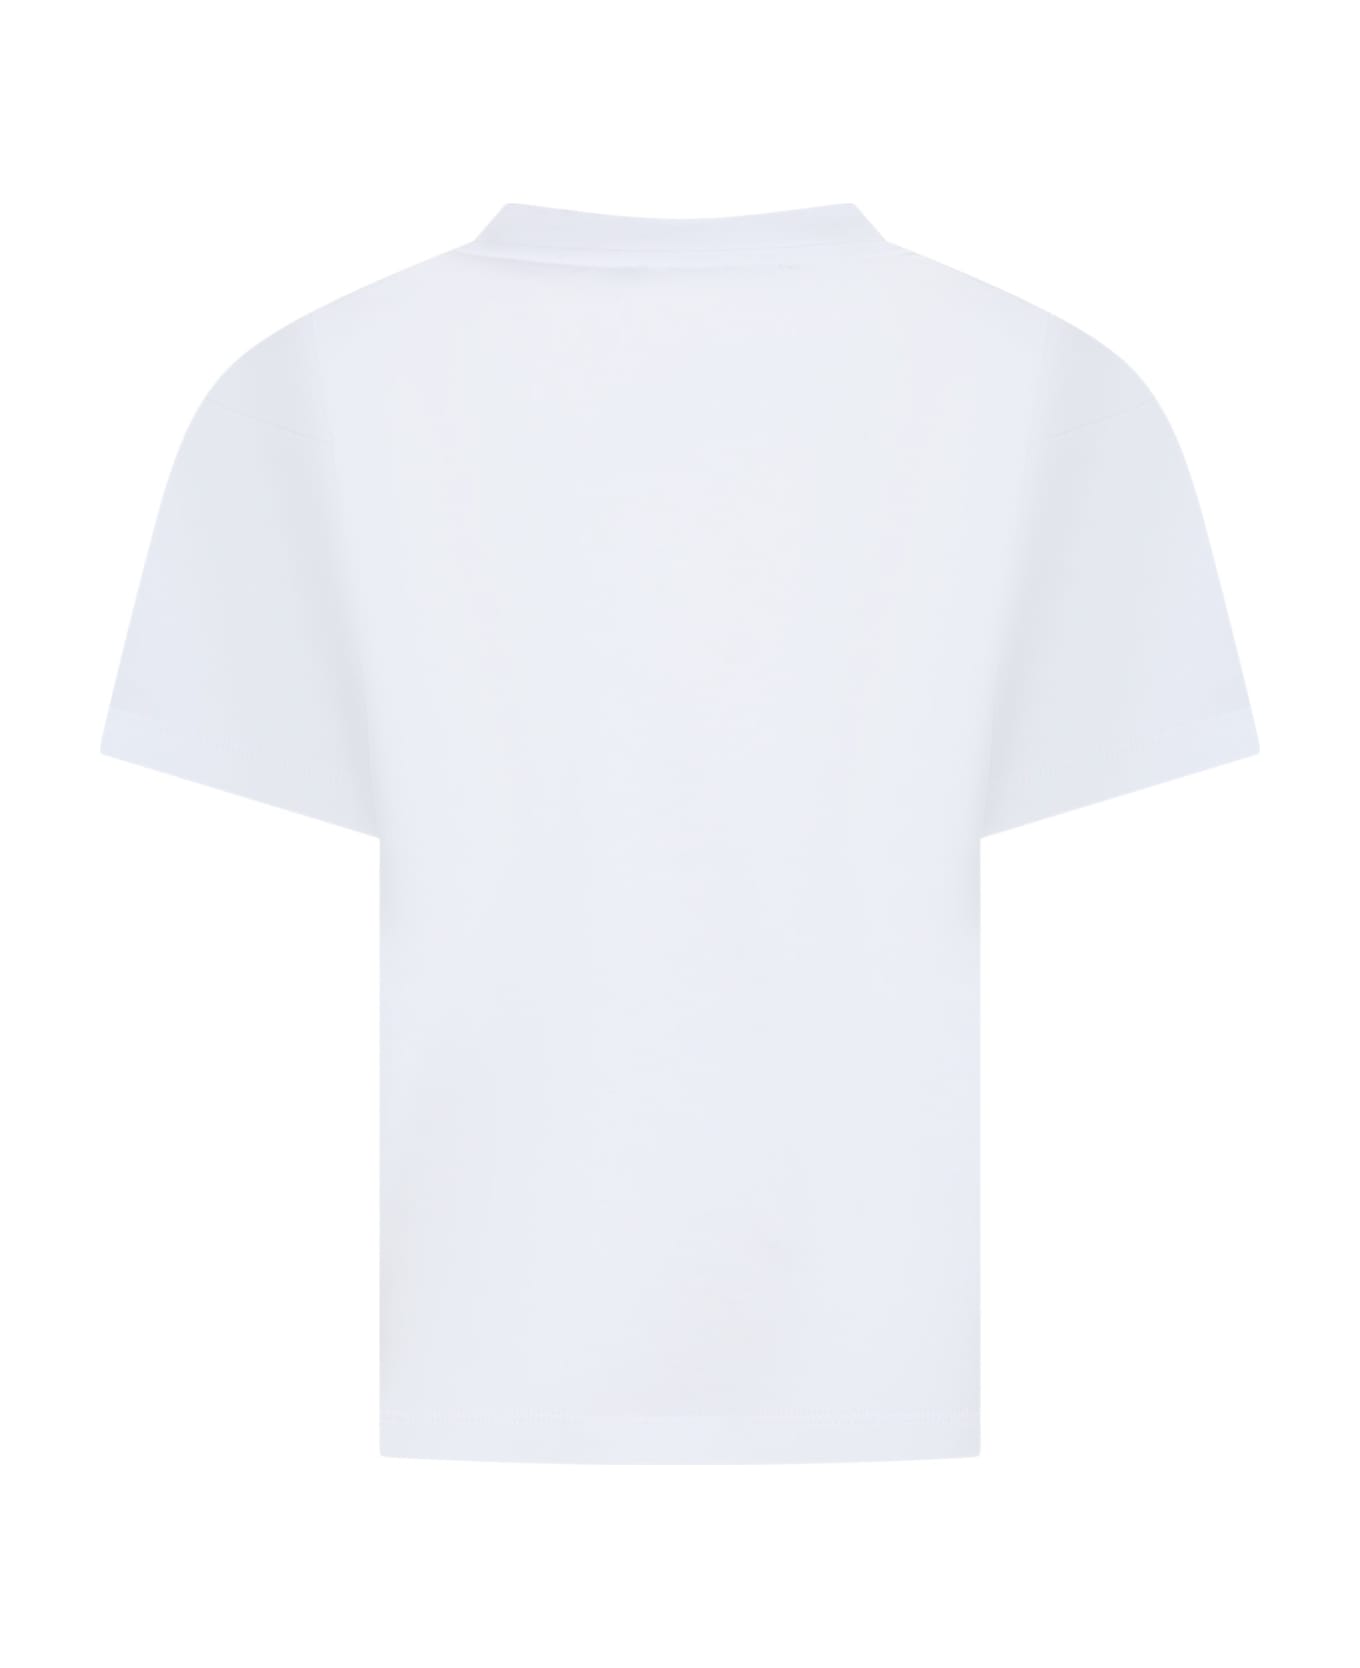 Balmain White T-shirt For Girl With Logo - White/fuchsia